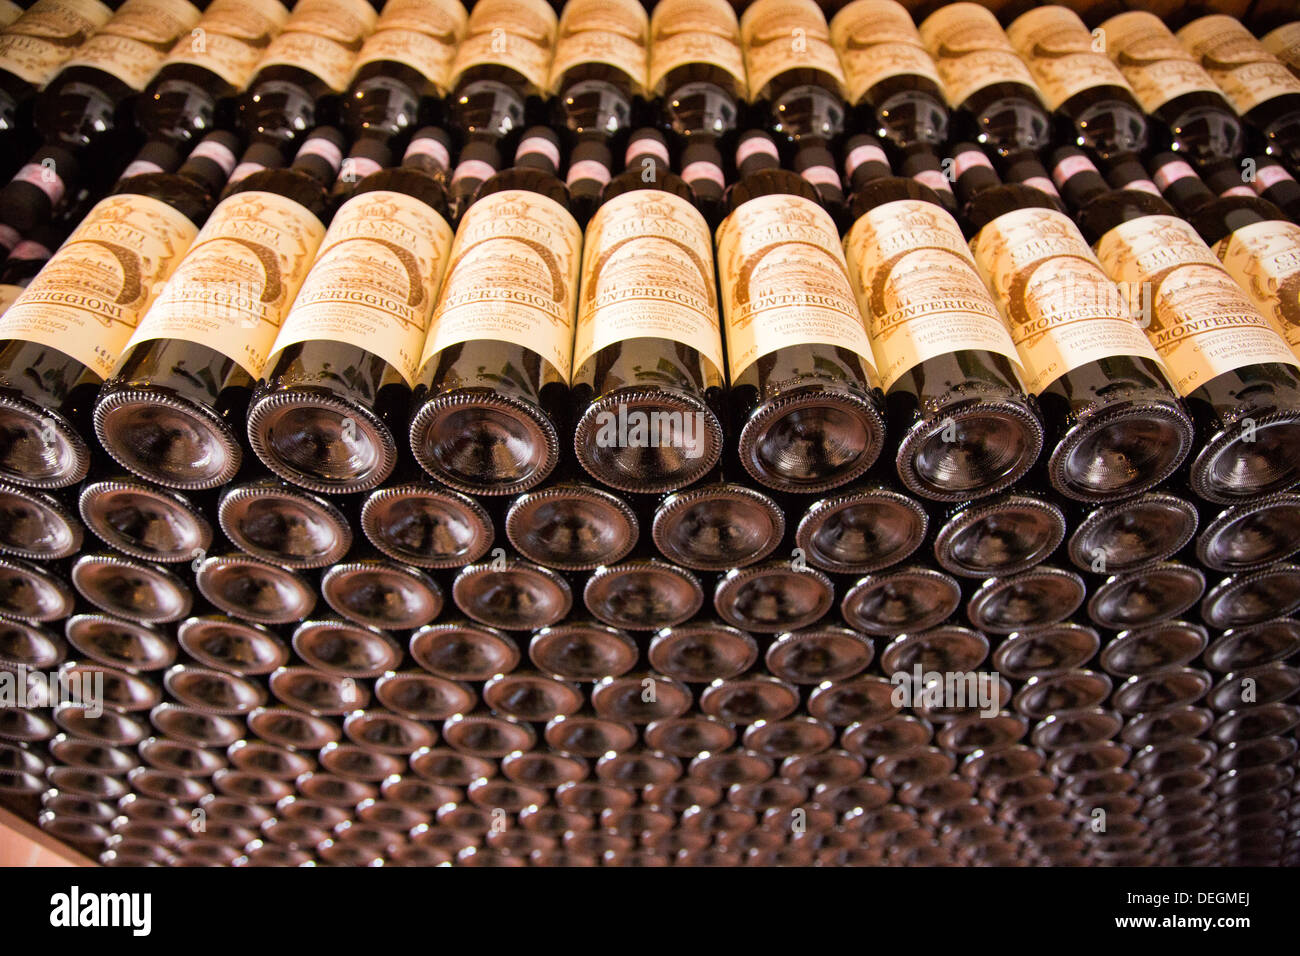 Les bouteilles de vin en cave, Monteriggioni, Province de Sienne, Toscane, Italie Banque D'Images